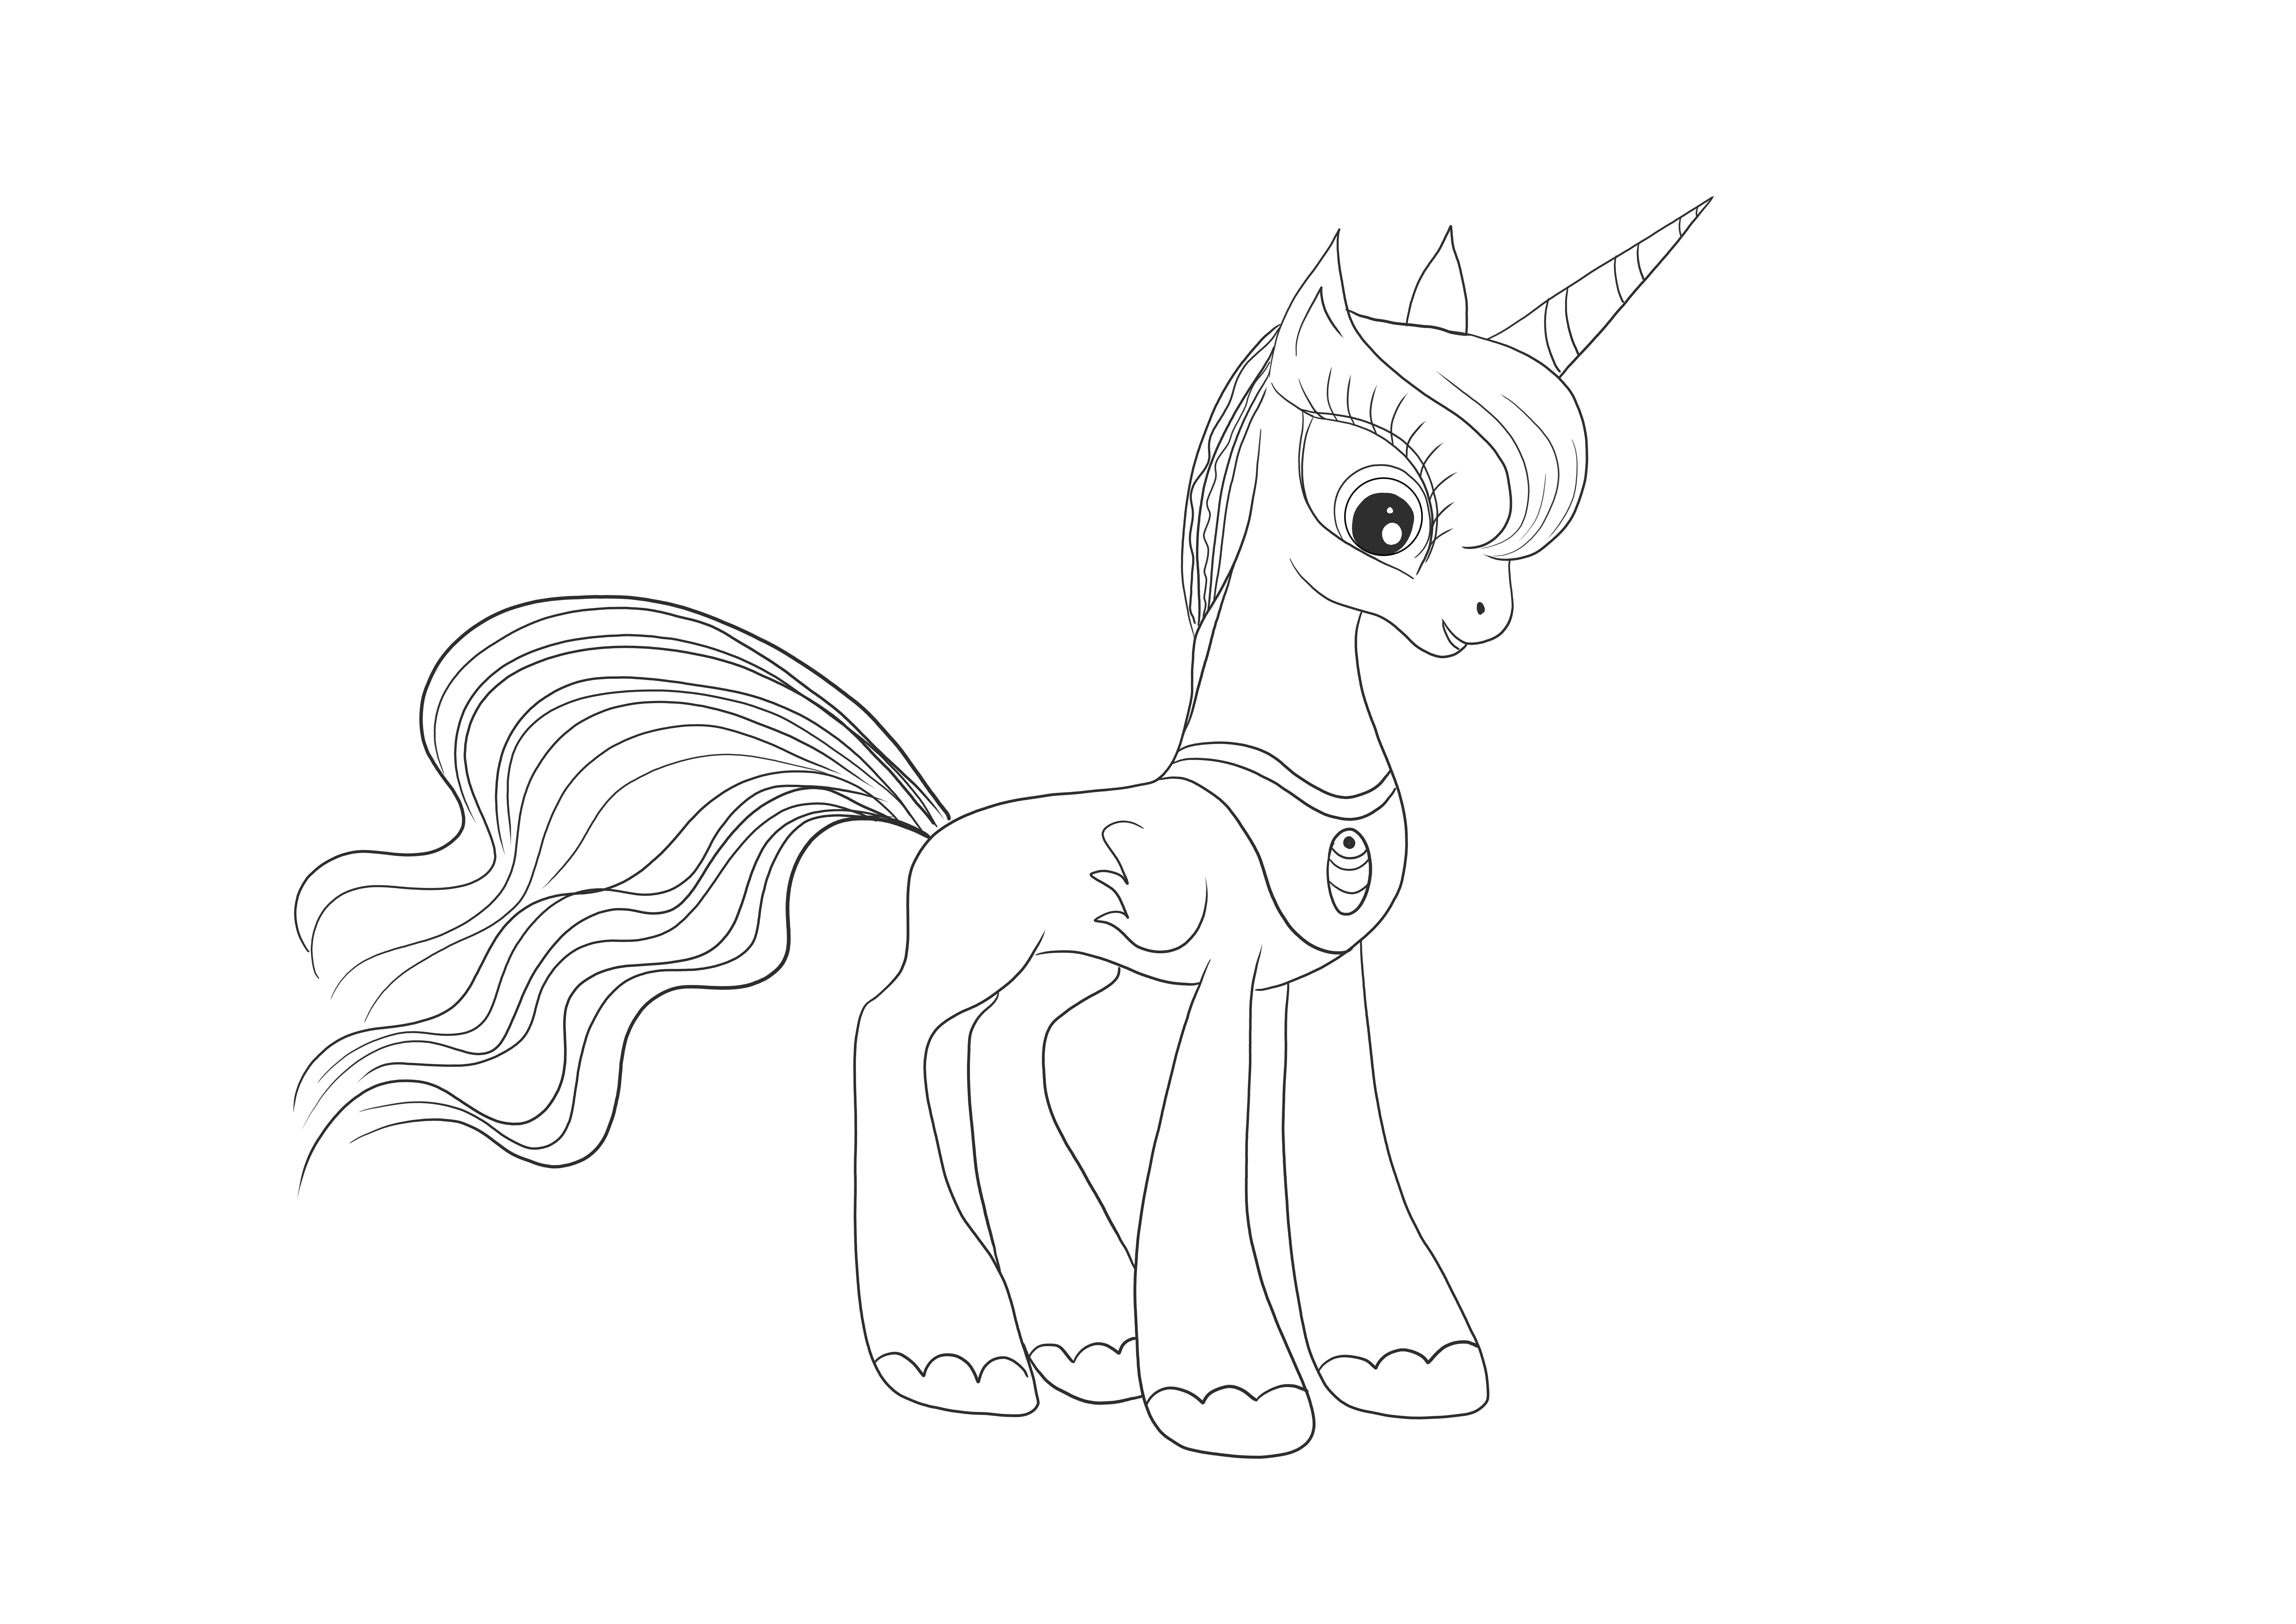 Princesa Luna de Little Pony para descargar gratis y hoja de color